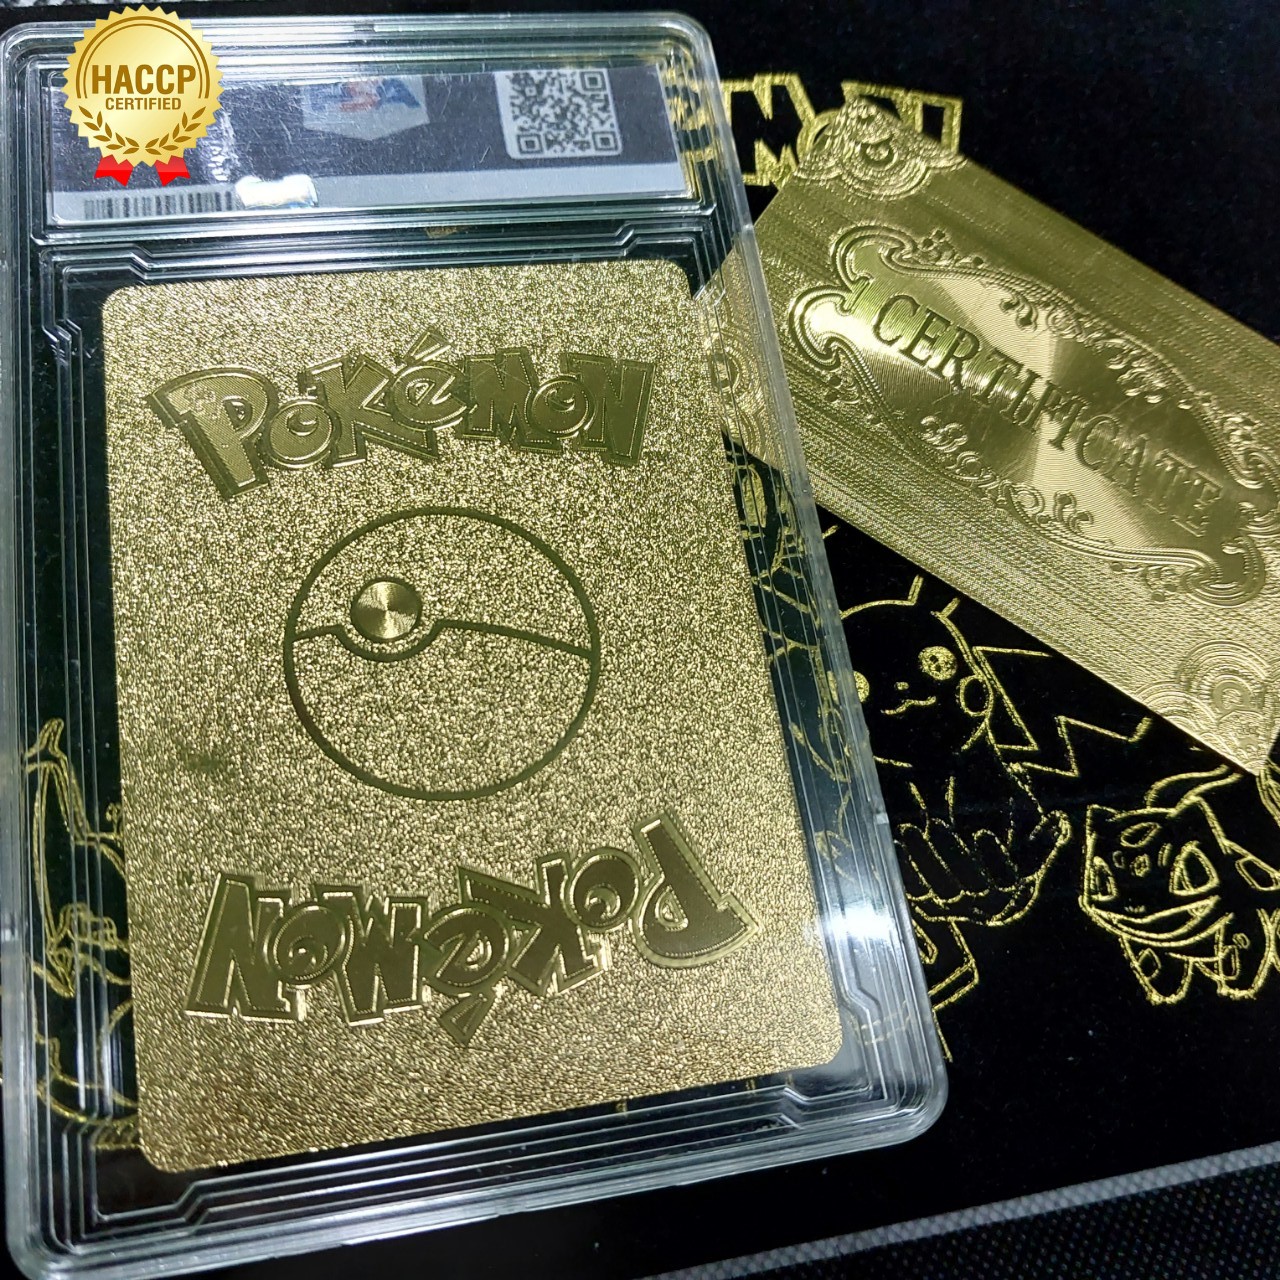 Charizard V 26-43 thẻ pokemon nhôm mạ vàng khủng long lửa bay Tặng kèm bảo vệ thẻ 1459 d24 1-35